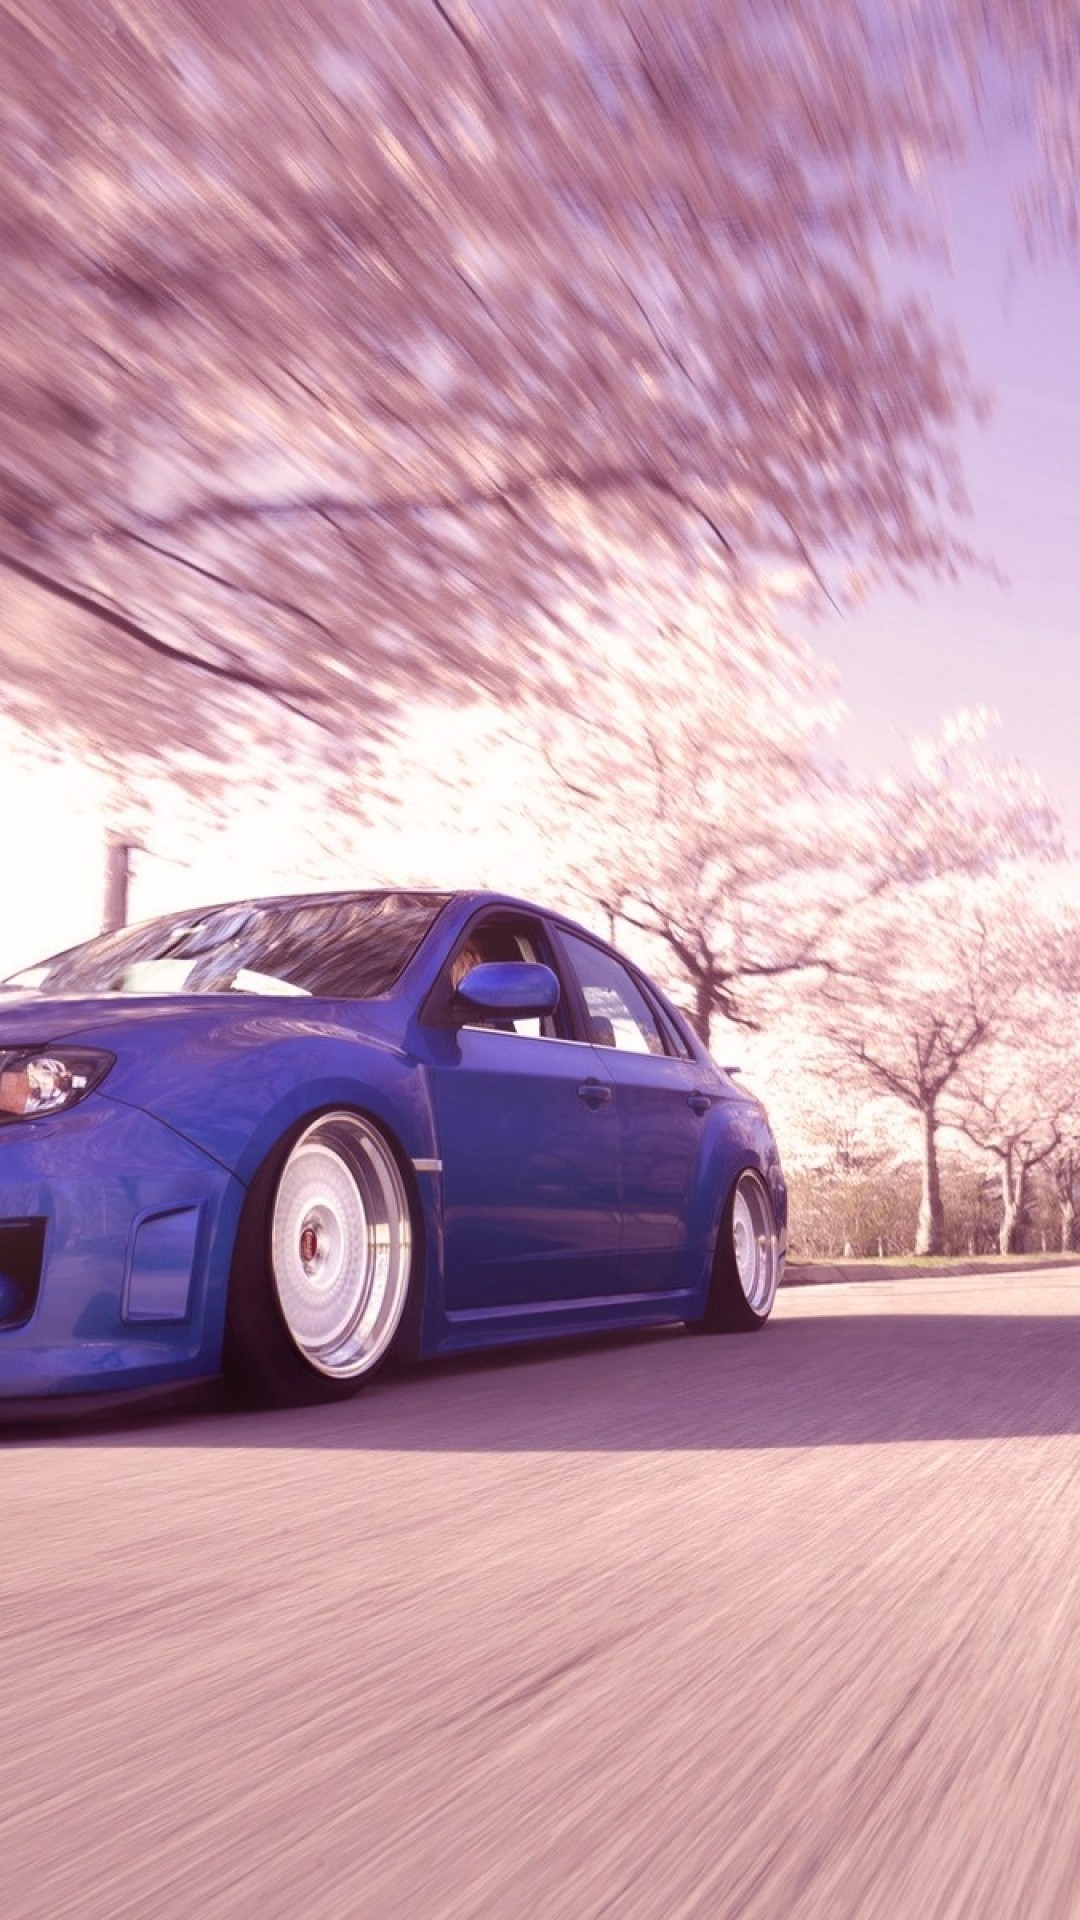 1080x1920 Subaru Wrx Sti, Blurred, Trees, Spring, Cars